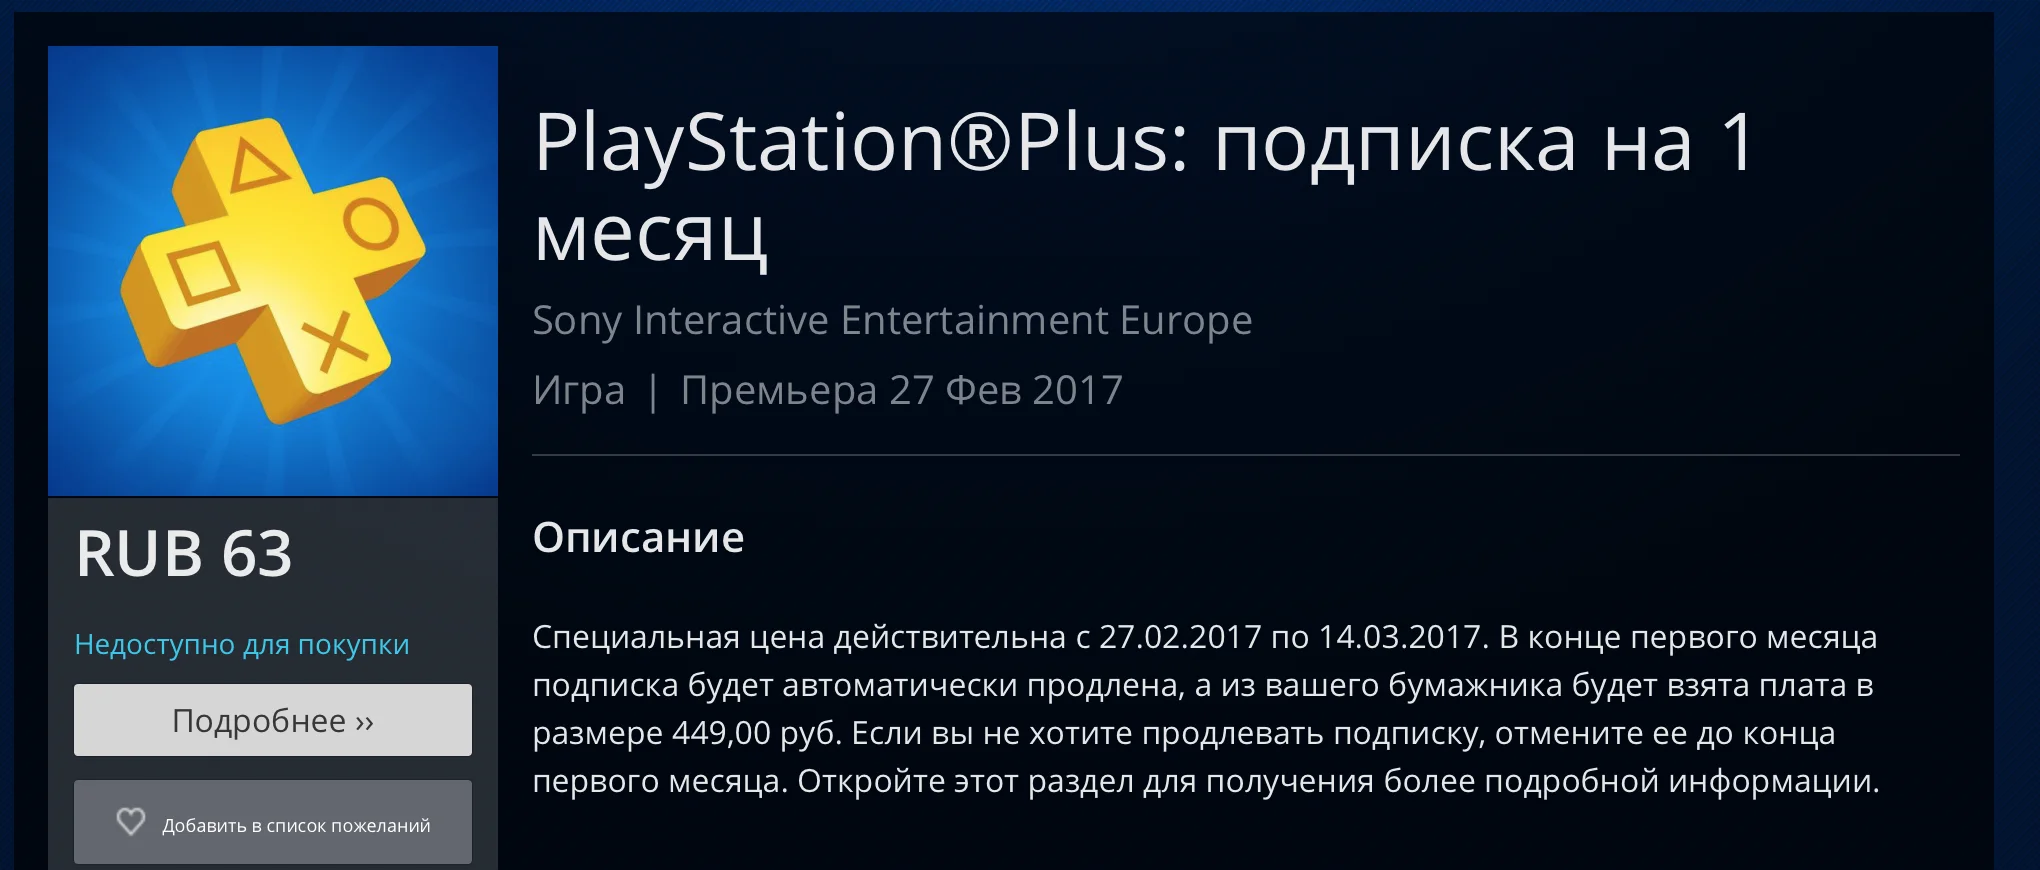 Sony в 7 раз снизила цену первого месяца подписки PlayStation Plus  - фото 2